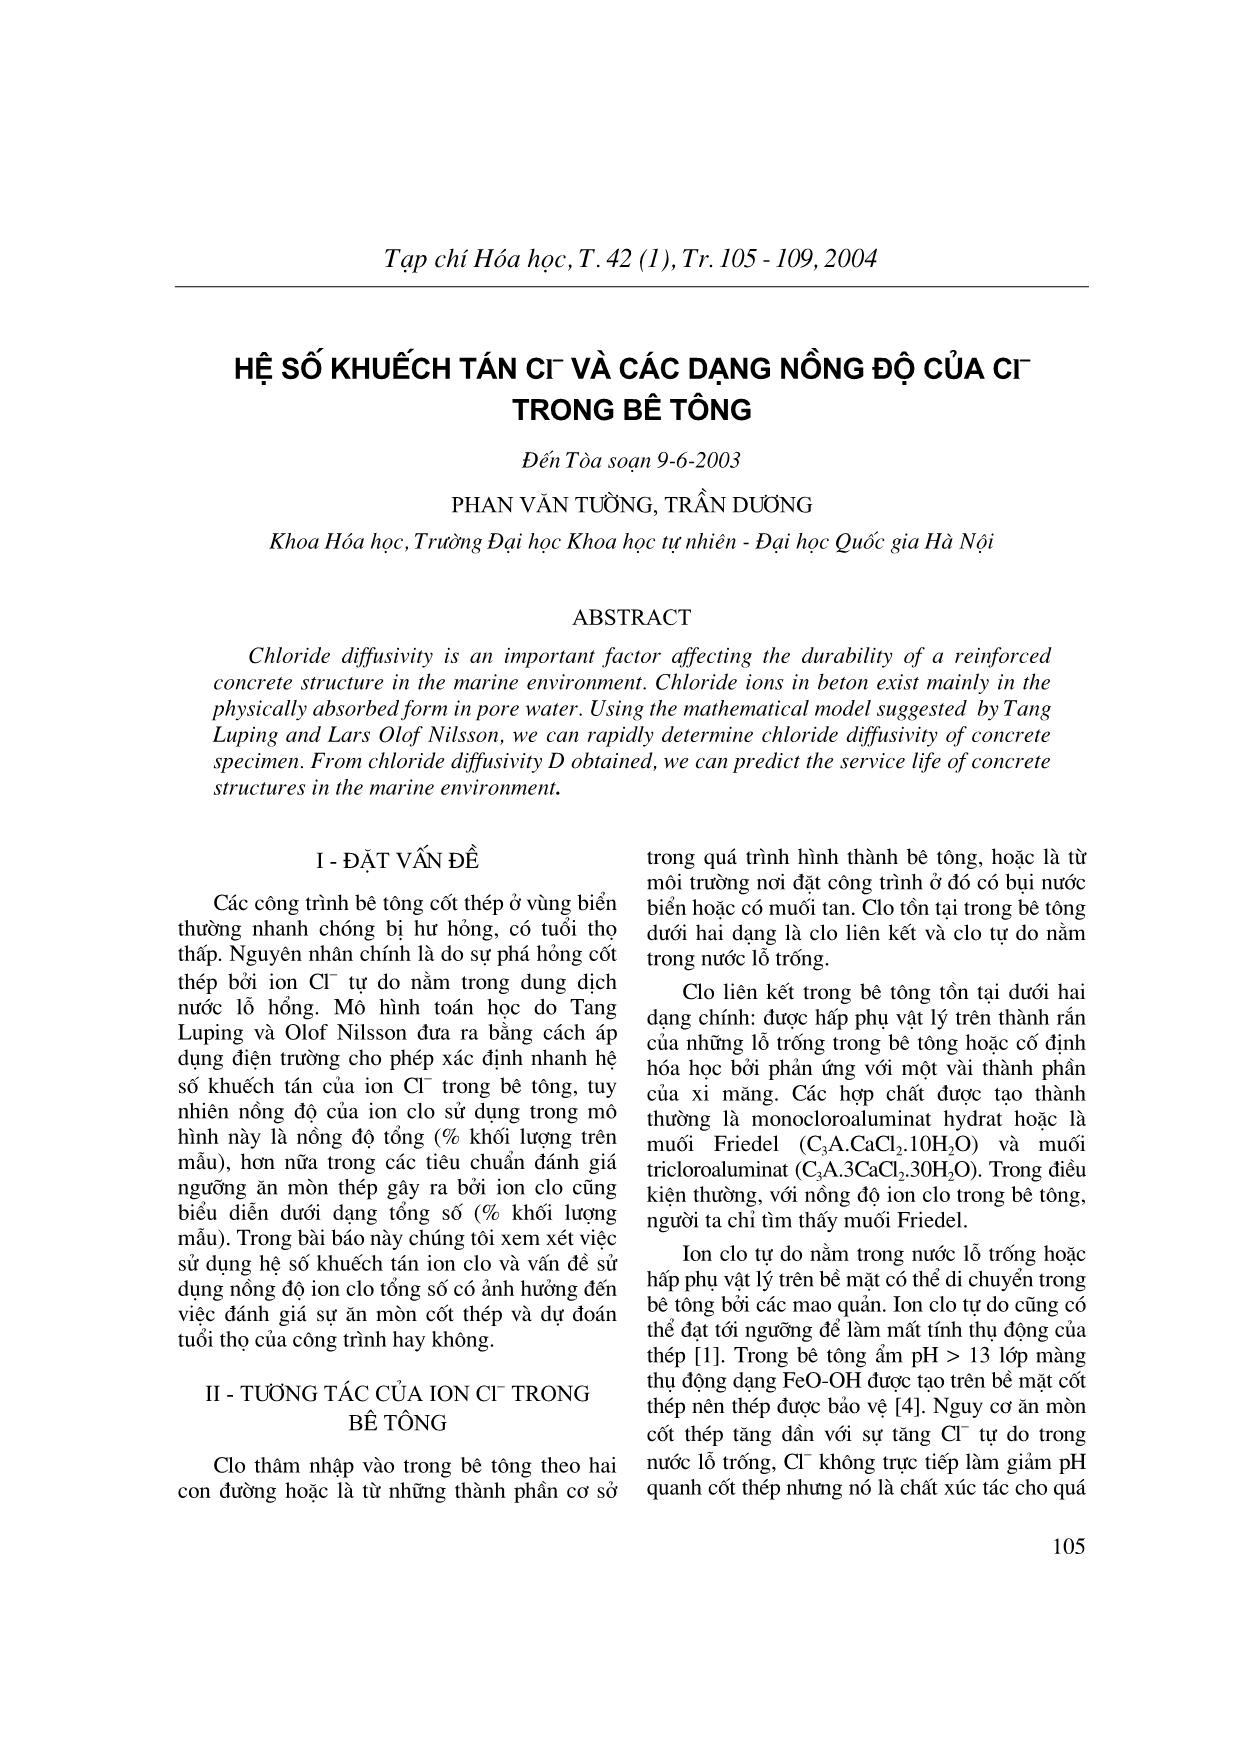 Hệ số khuếch tán Cl và các dạng nồng độ của Cl trong bê tông trang 1